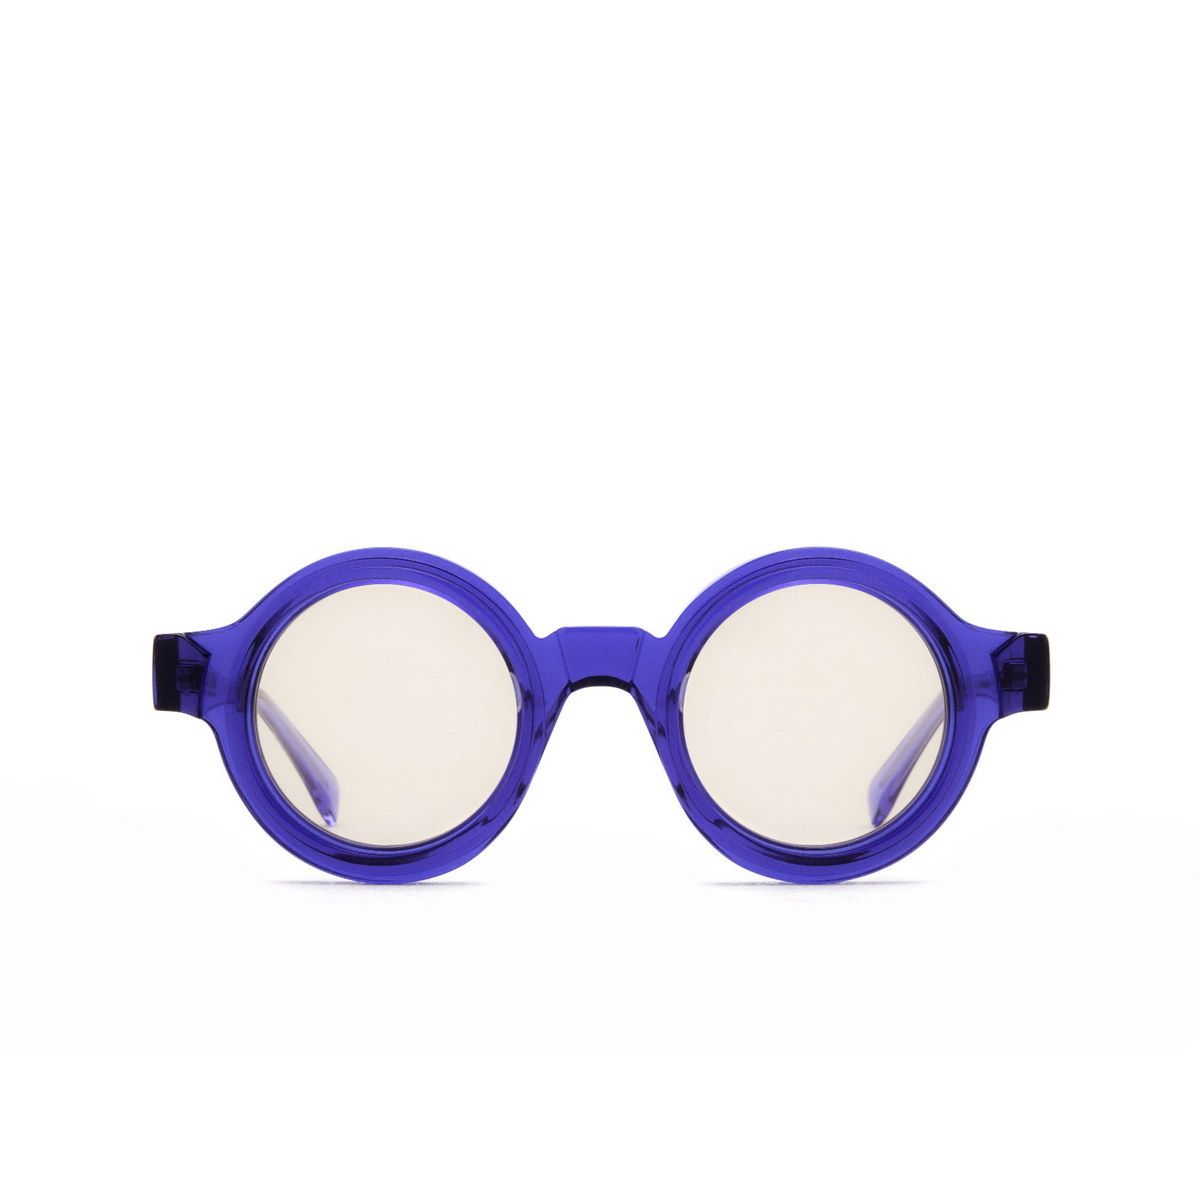 Kuboraum® Round Sunglasses: S2 color Blue & Transparent Blue Bl - front view.